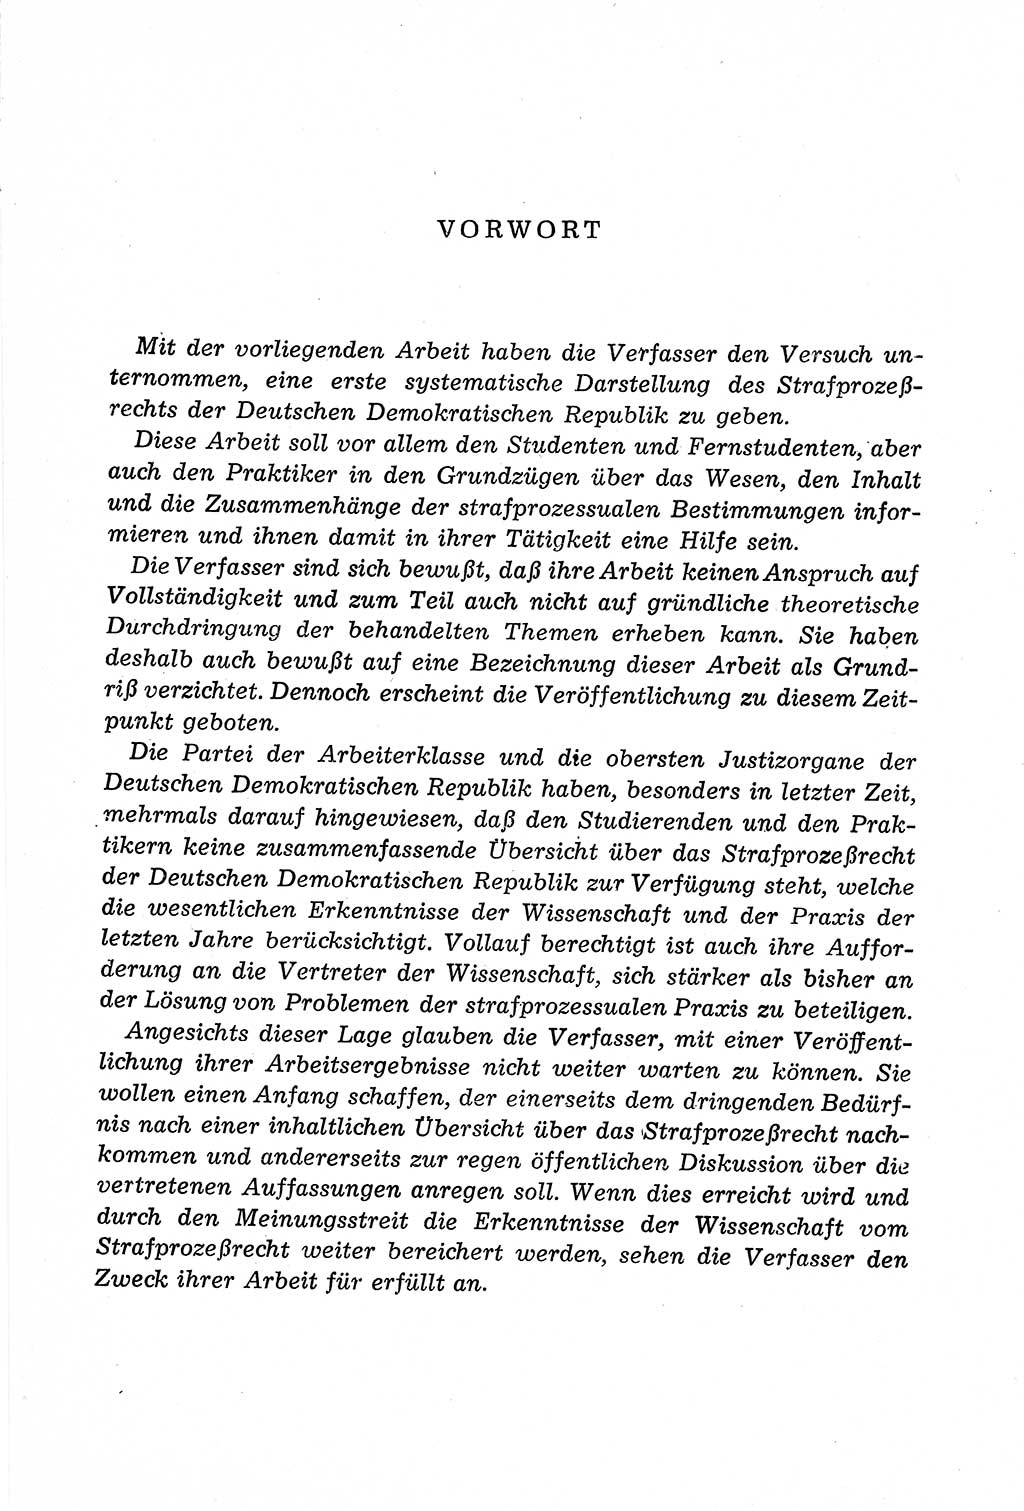 Leitfaden des Strafprozeßrechts der Deutschen Demokratischen Republik (DDR) 1959, Seite 5 (LF StPR DDR 1959, S. 5)